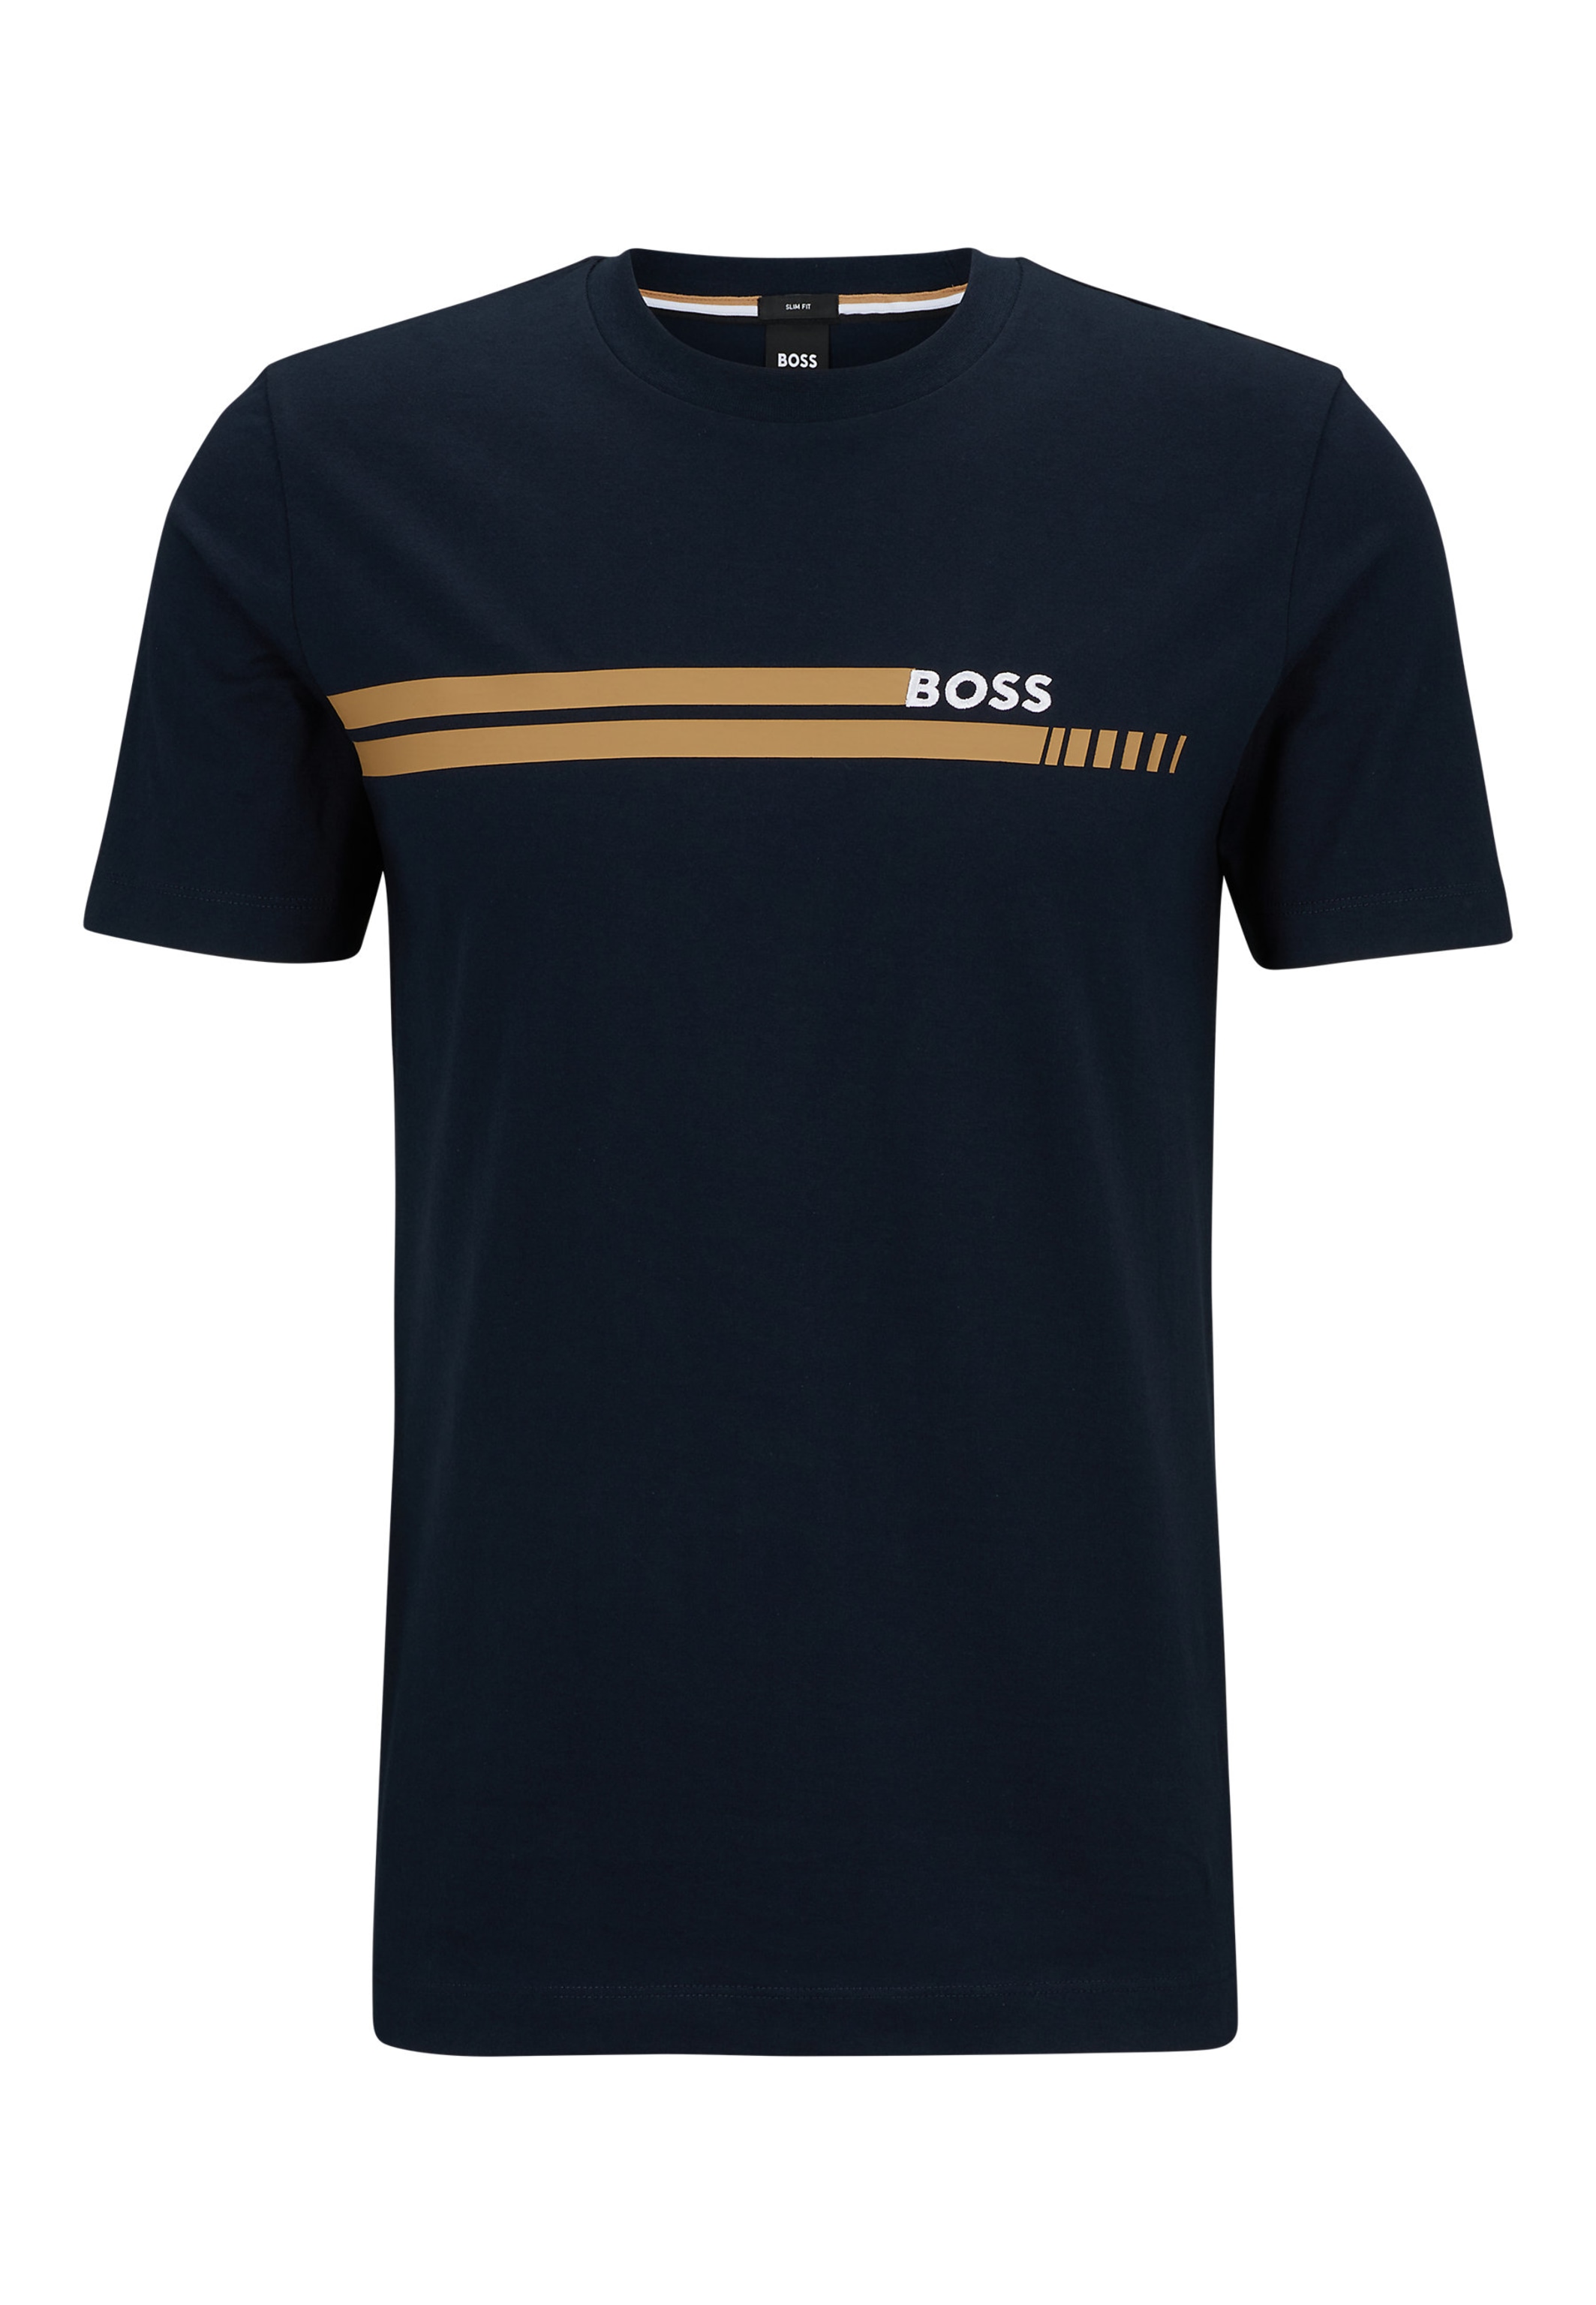 TESSLER BOSS T-Shirt in Fit 197 Slim dunkelblau